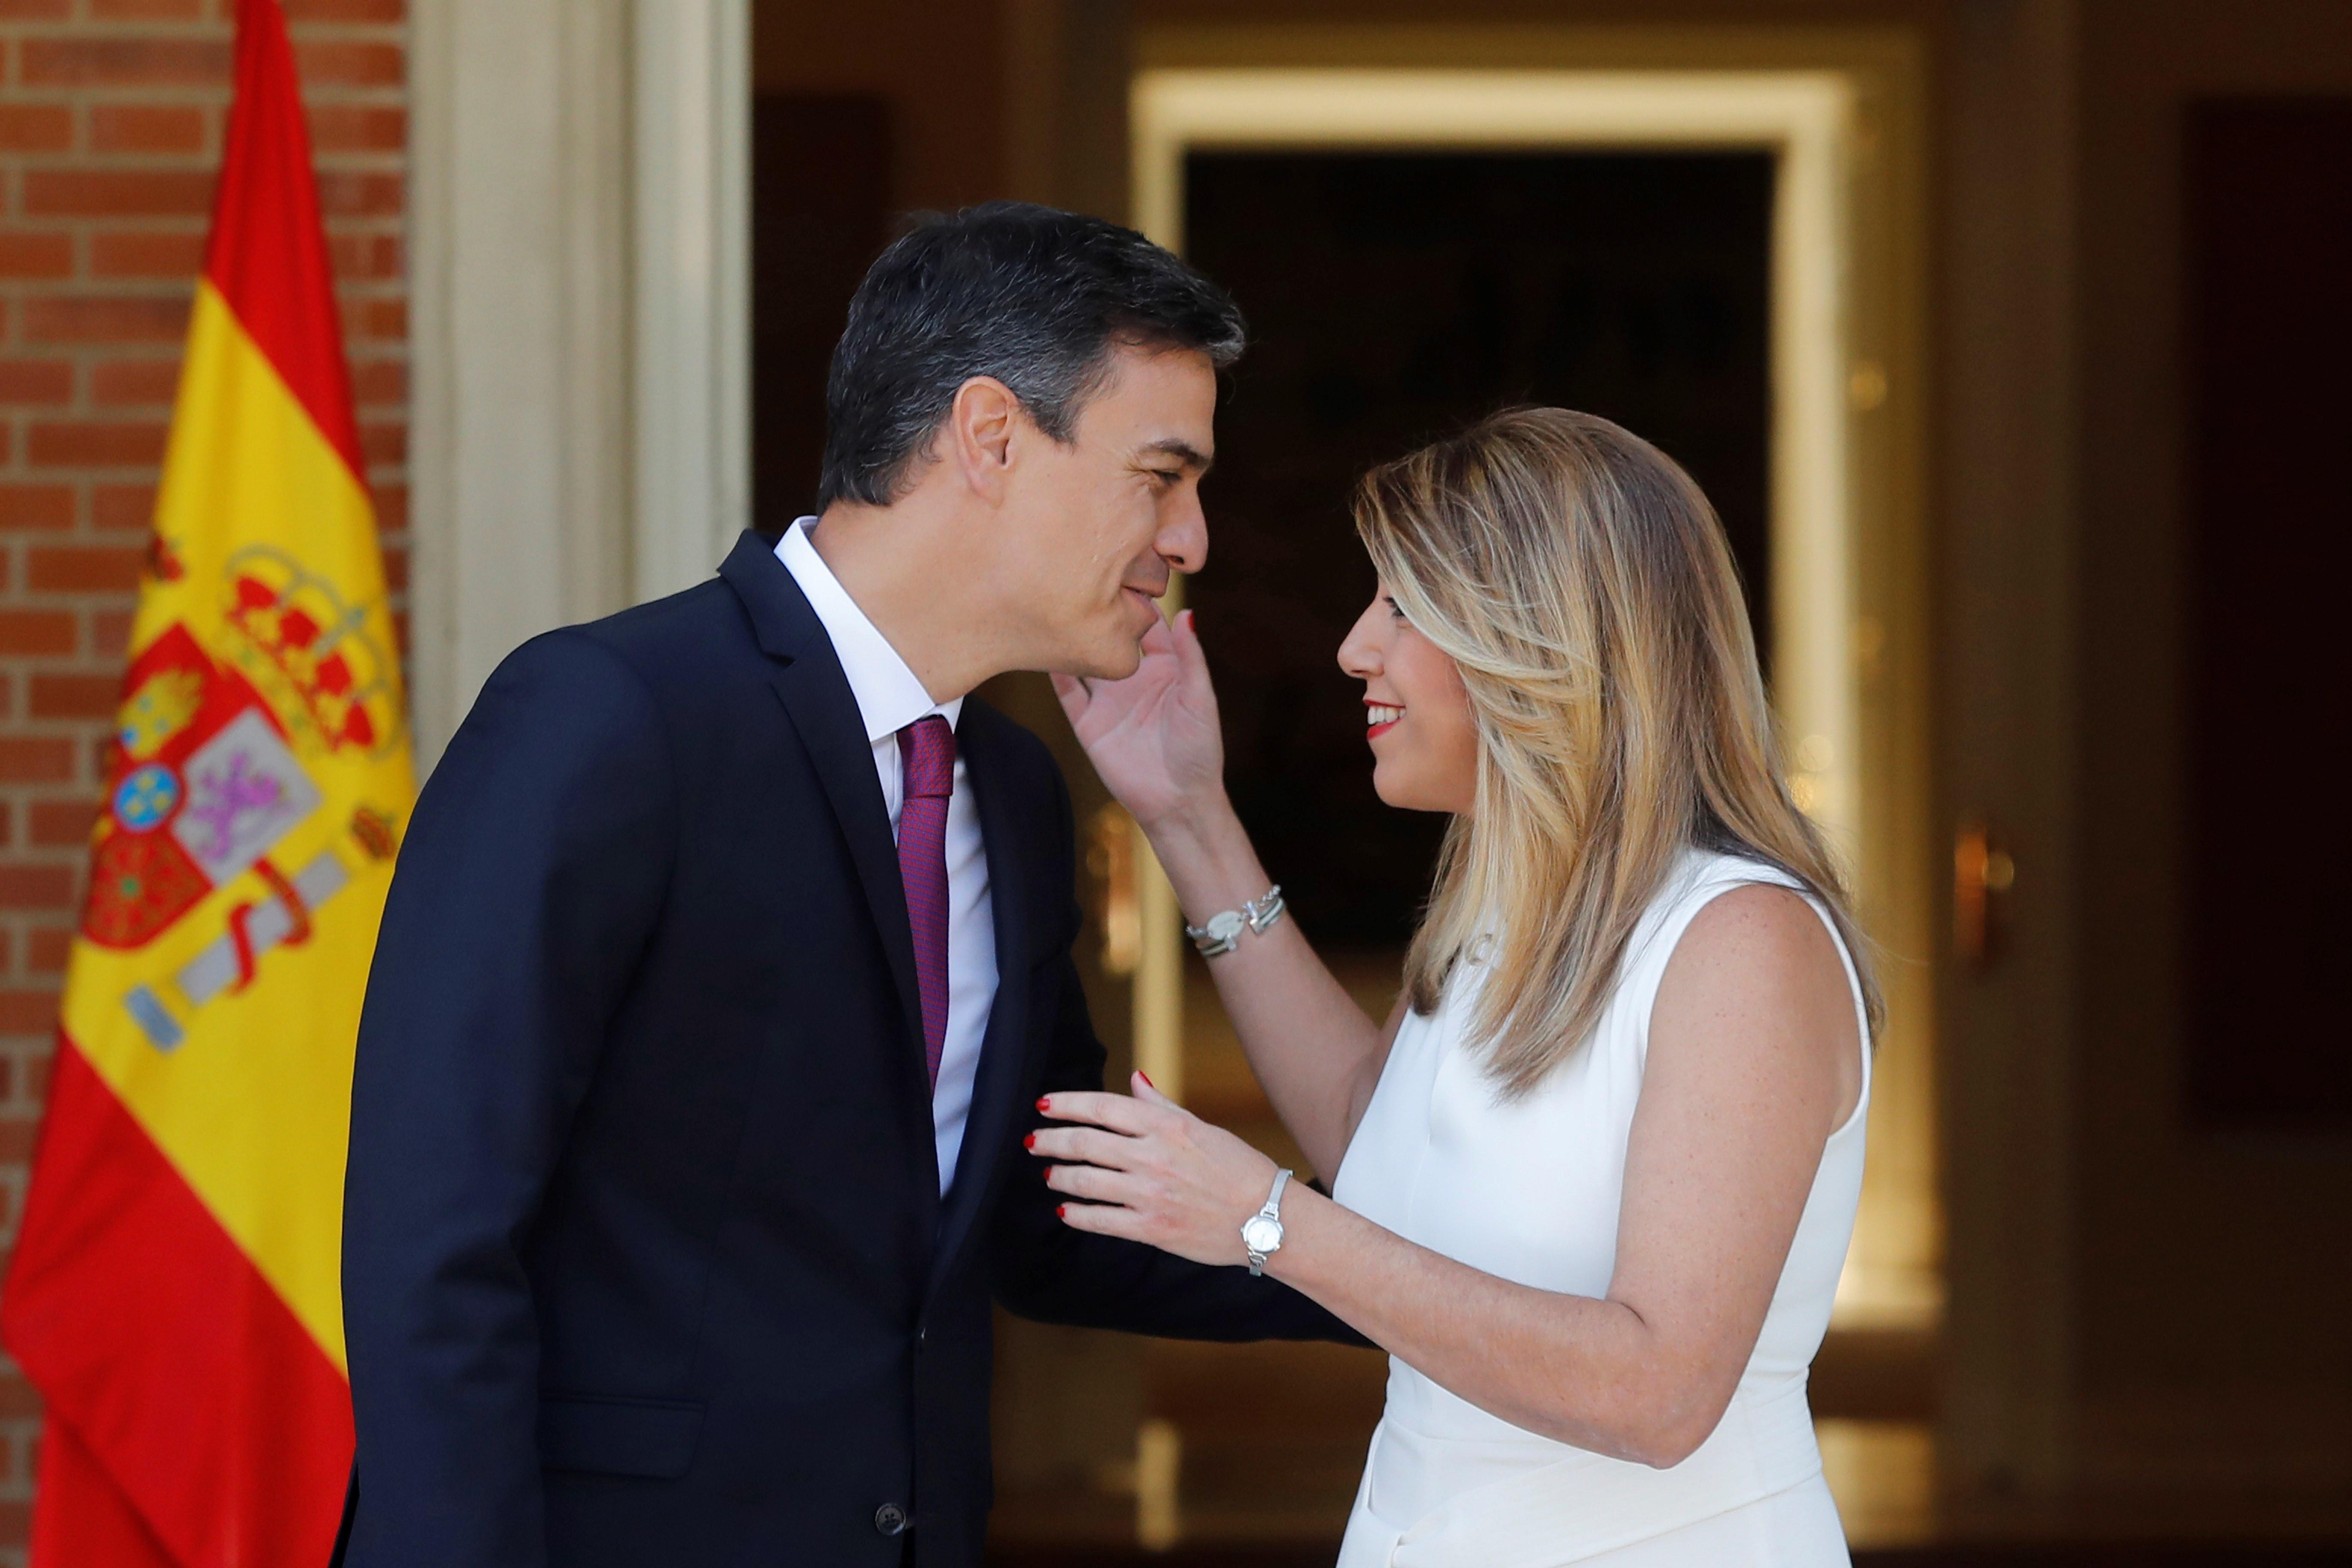 Sánchez pica l'ullet a Díaz: li promet 500 milions "immediats" per a Andalusia